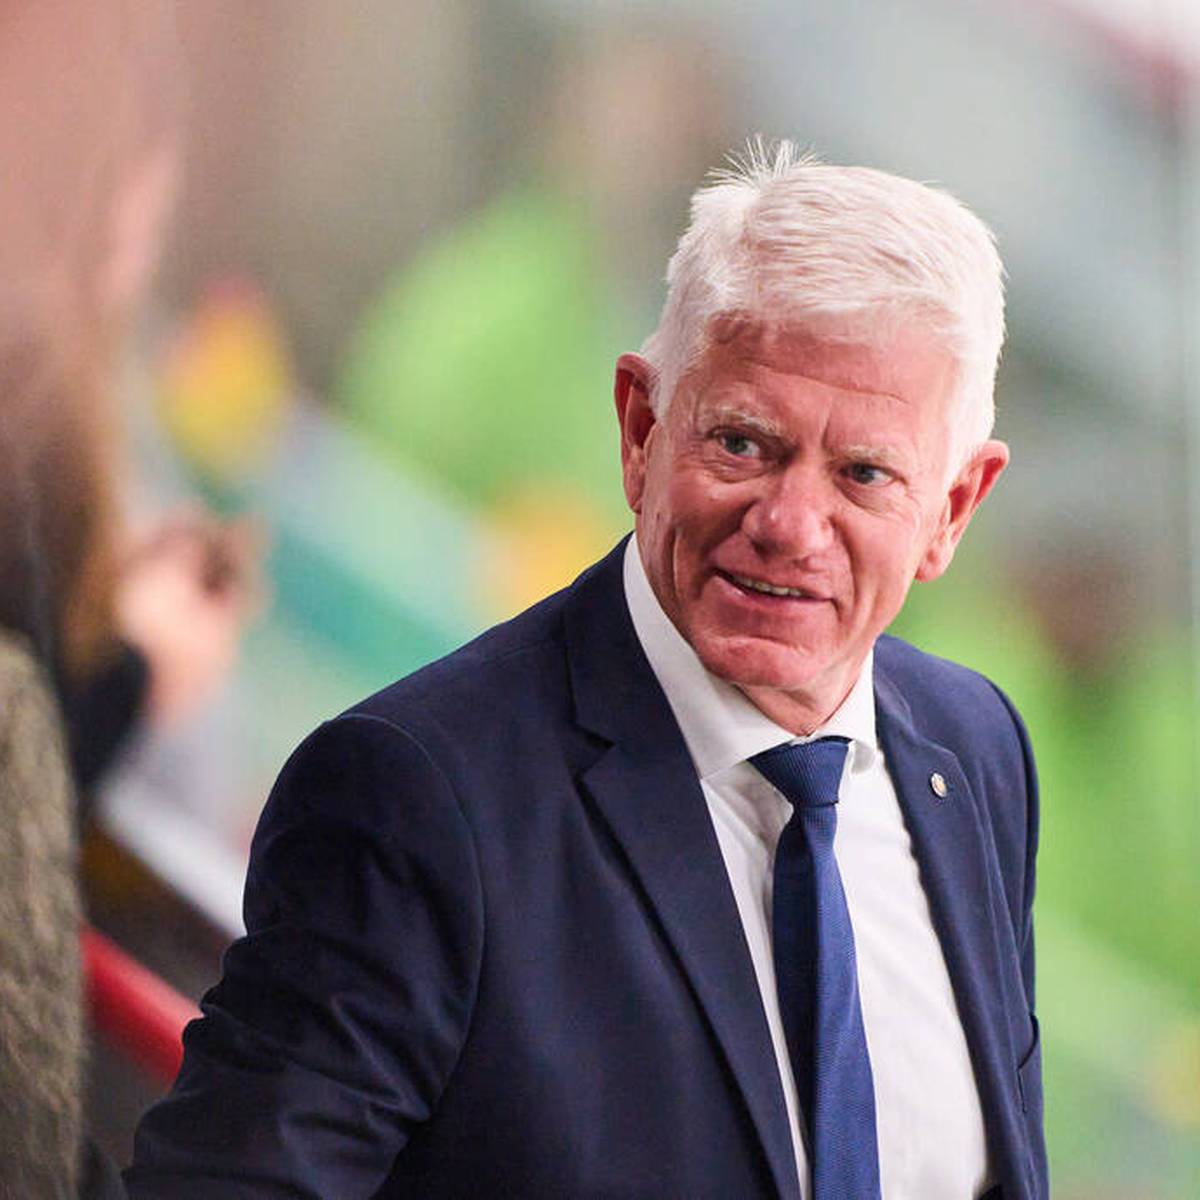 Der frühere Sportdirektor des Deutschen Eishockey-Bundes, Stefan Schaidnagel, hat die Arbeit des langjährigen Präsidenten Franz Reindl kritisiert.